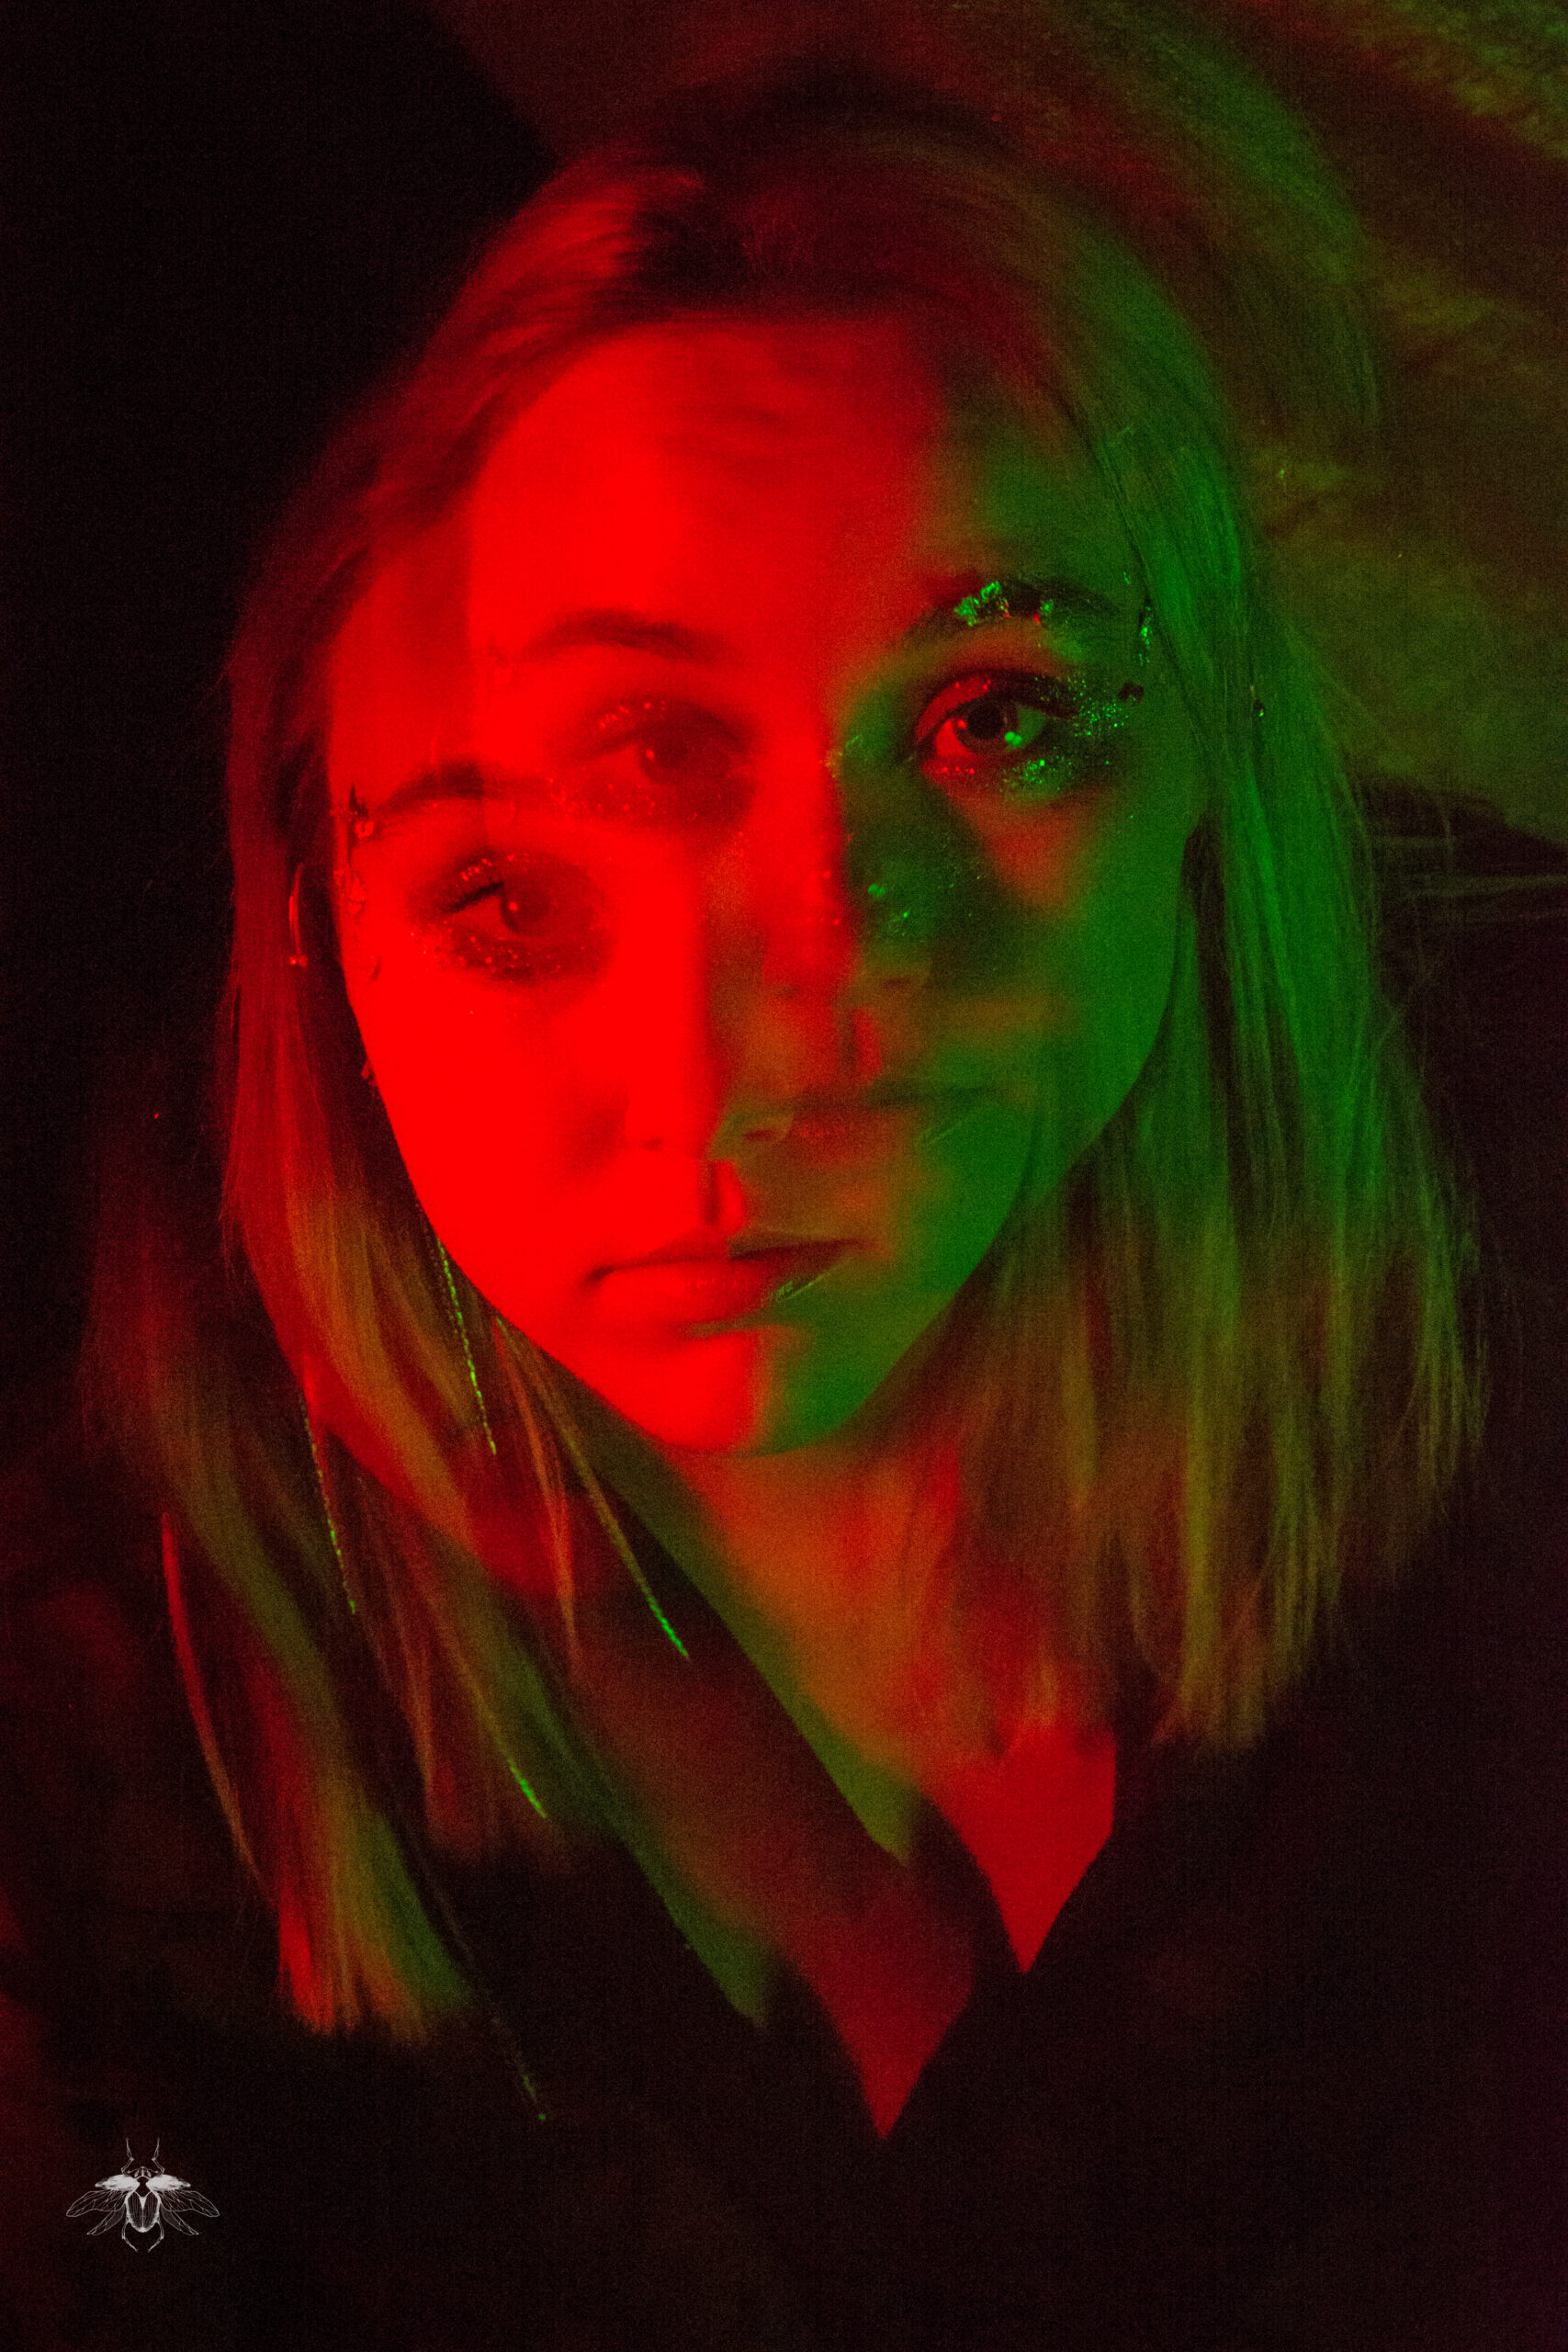 Séance moderne avec Jenn, avec une couleur très forte rouge et verte, d'inspiration de la série Euphoria.